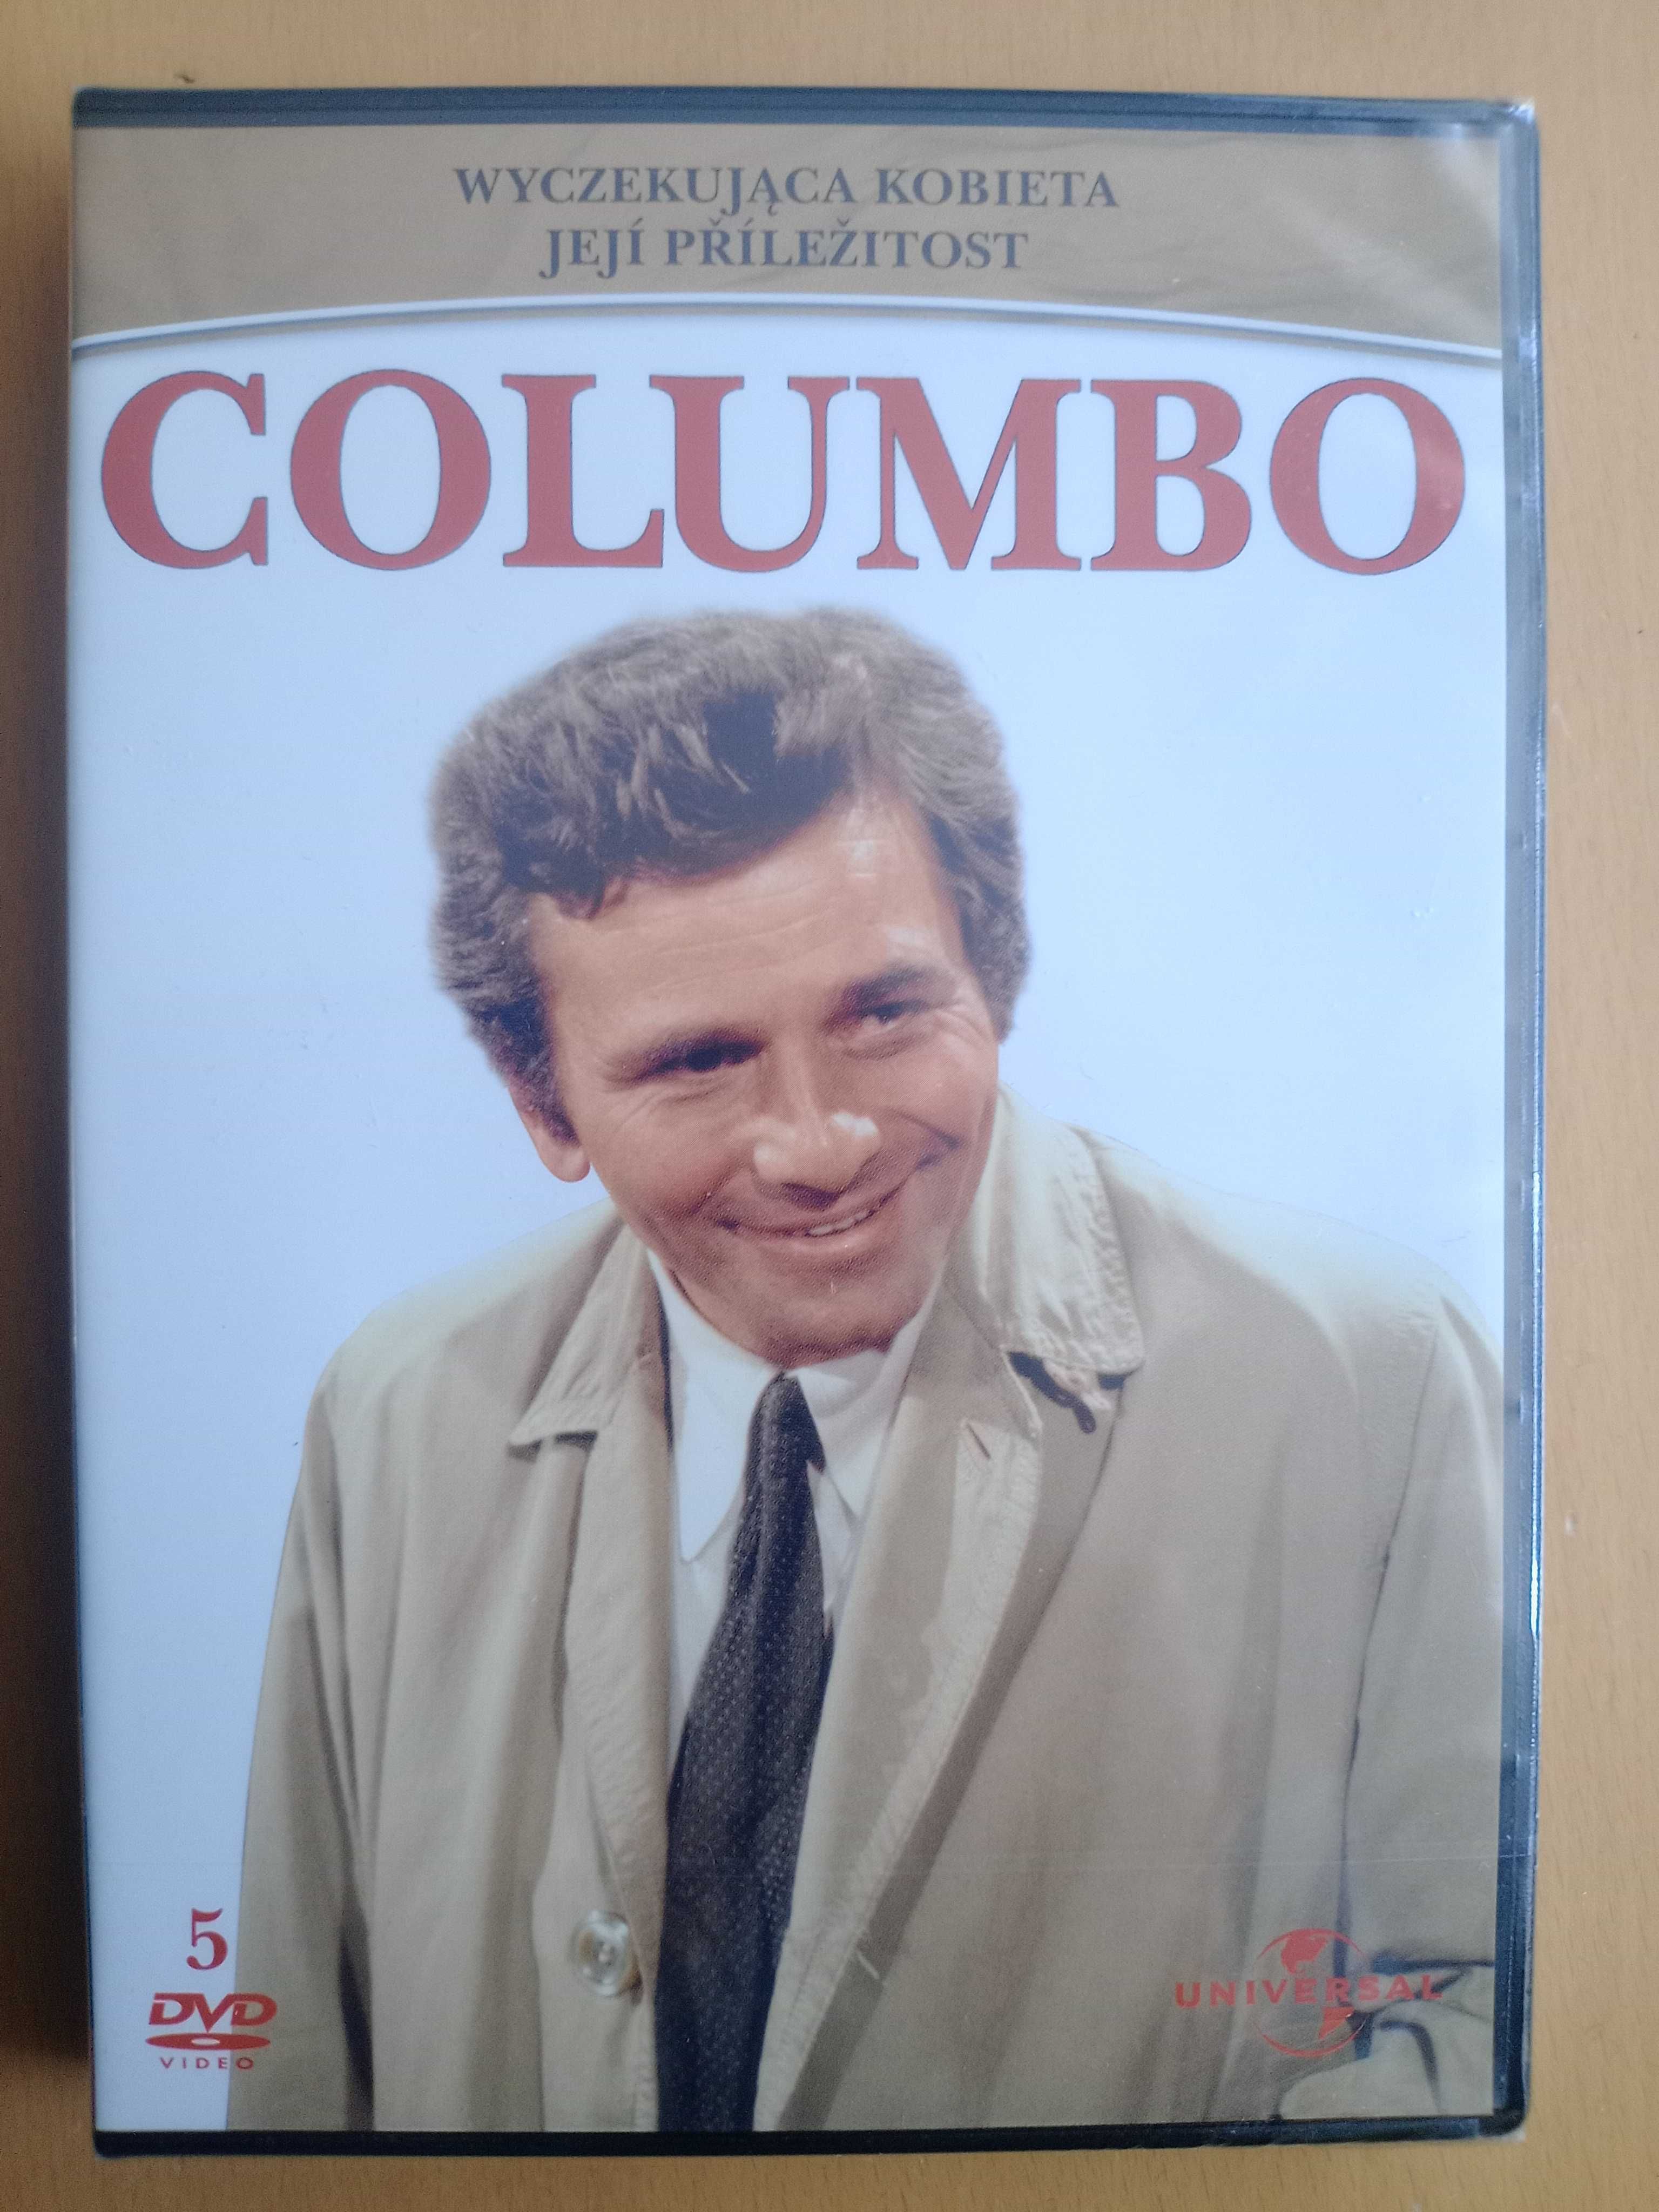 Columbo Wyczekująca kobieta odcinek 5 DVD nowe w folii